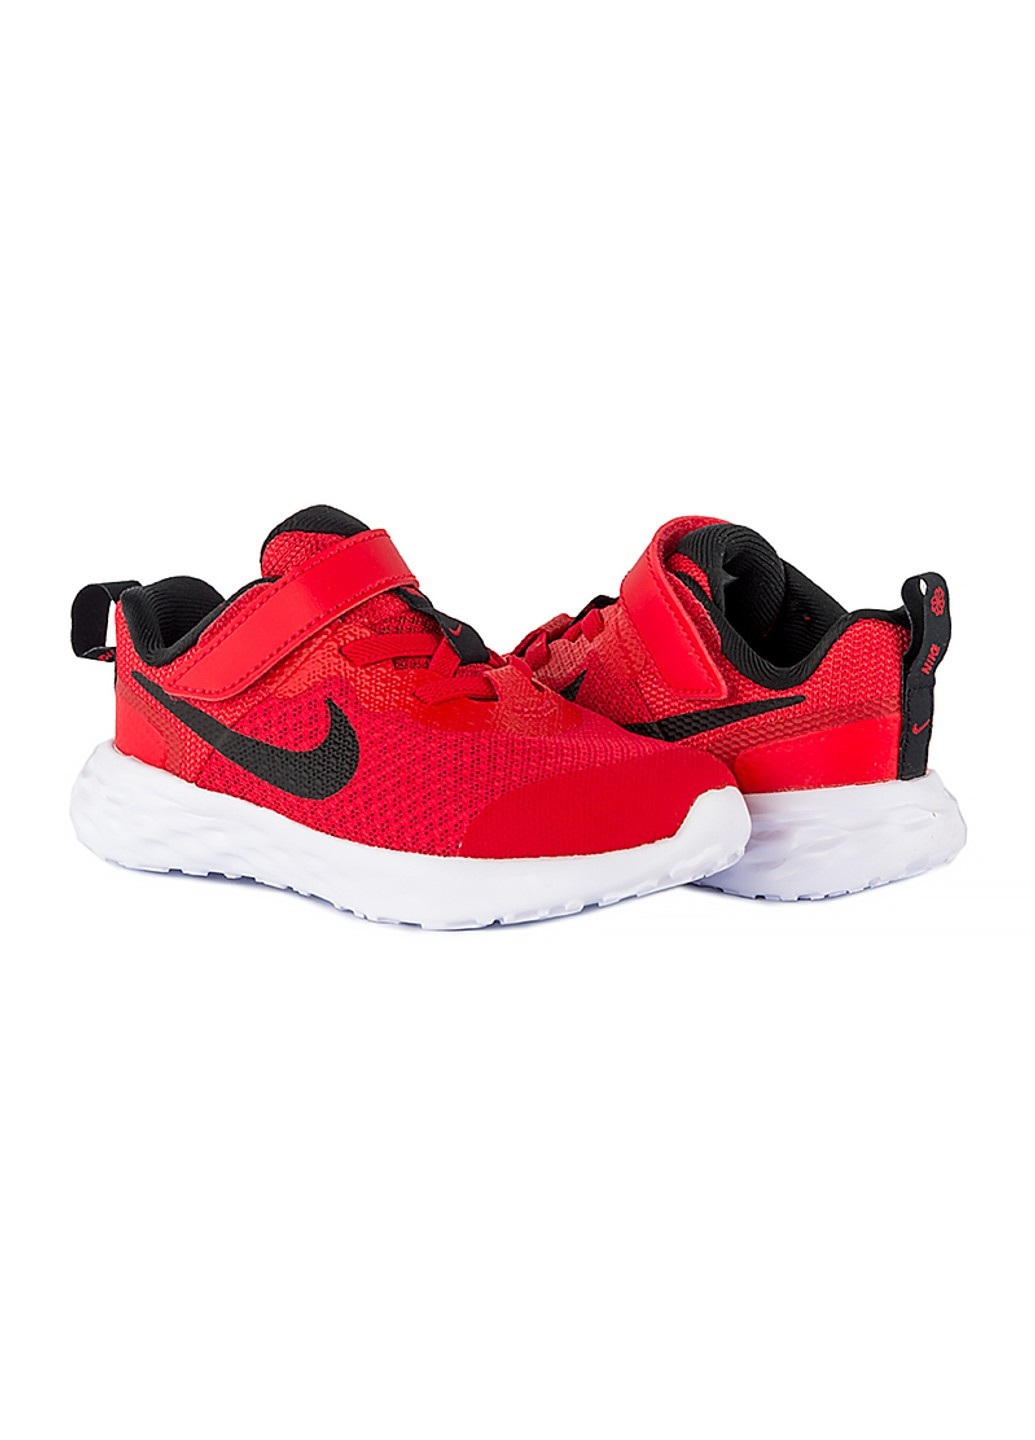 Красные демисезонные кроссовки revolution 6 nn (tdv) Nike